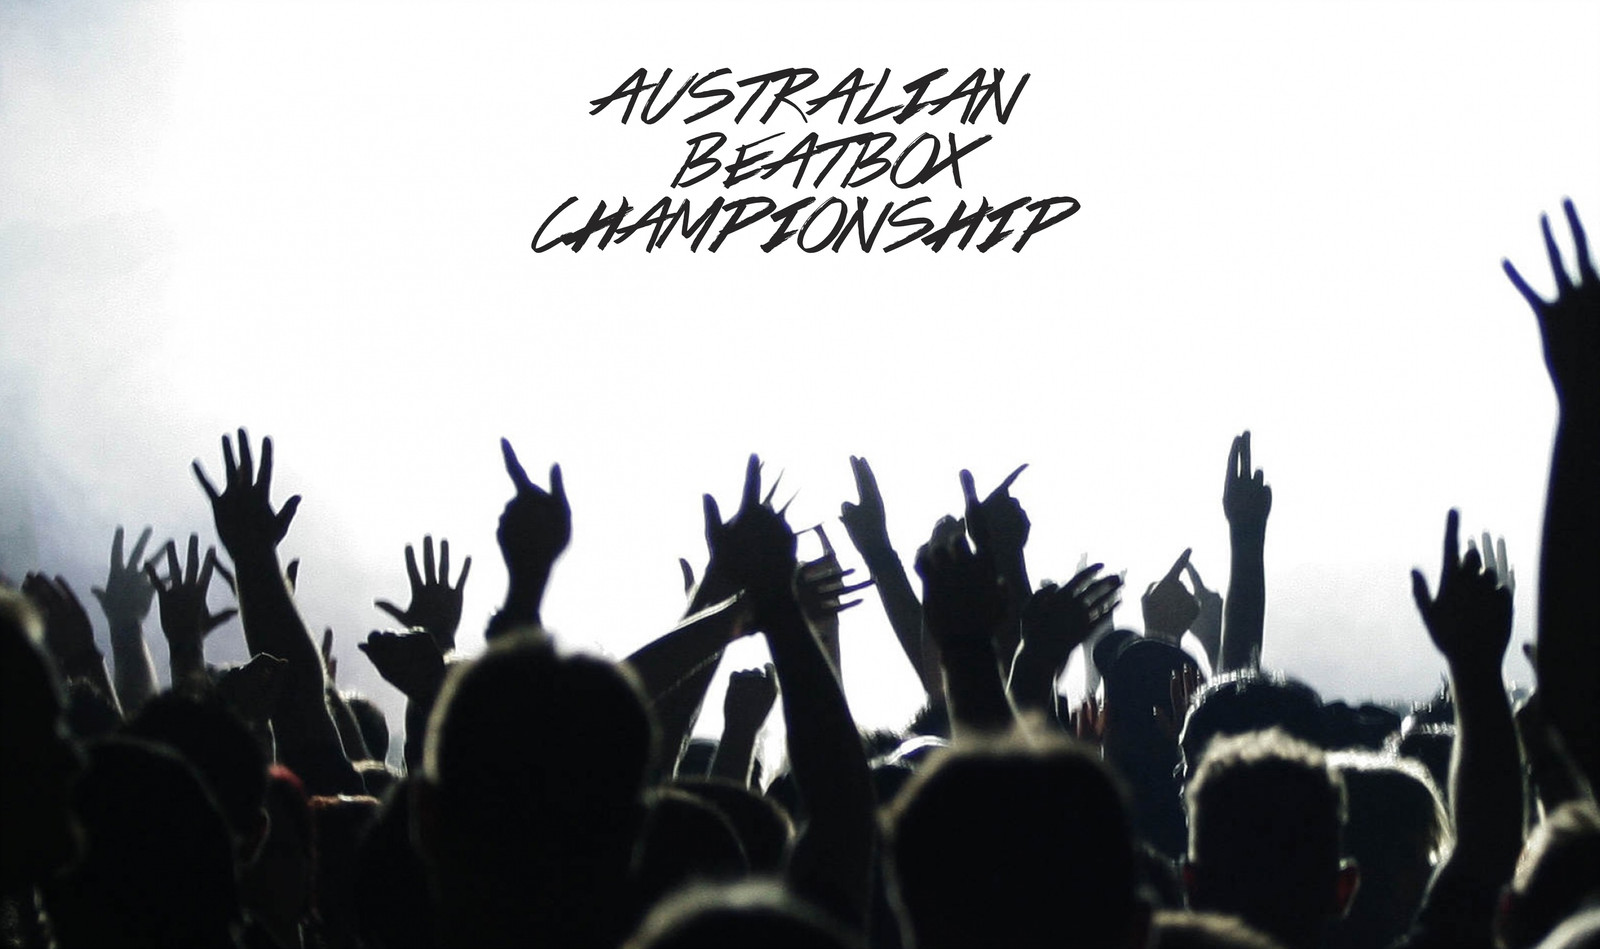 Australian Beatbox Champioship 2017 Widescreen Wallpaper - High Resolution Concert Crowd , HD Wallpaper & Backgrounds